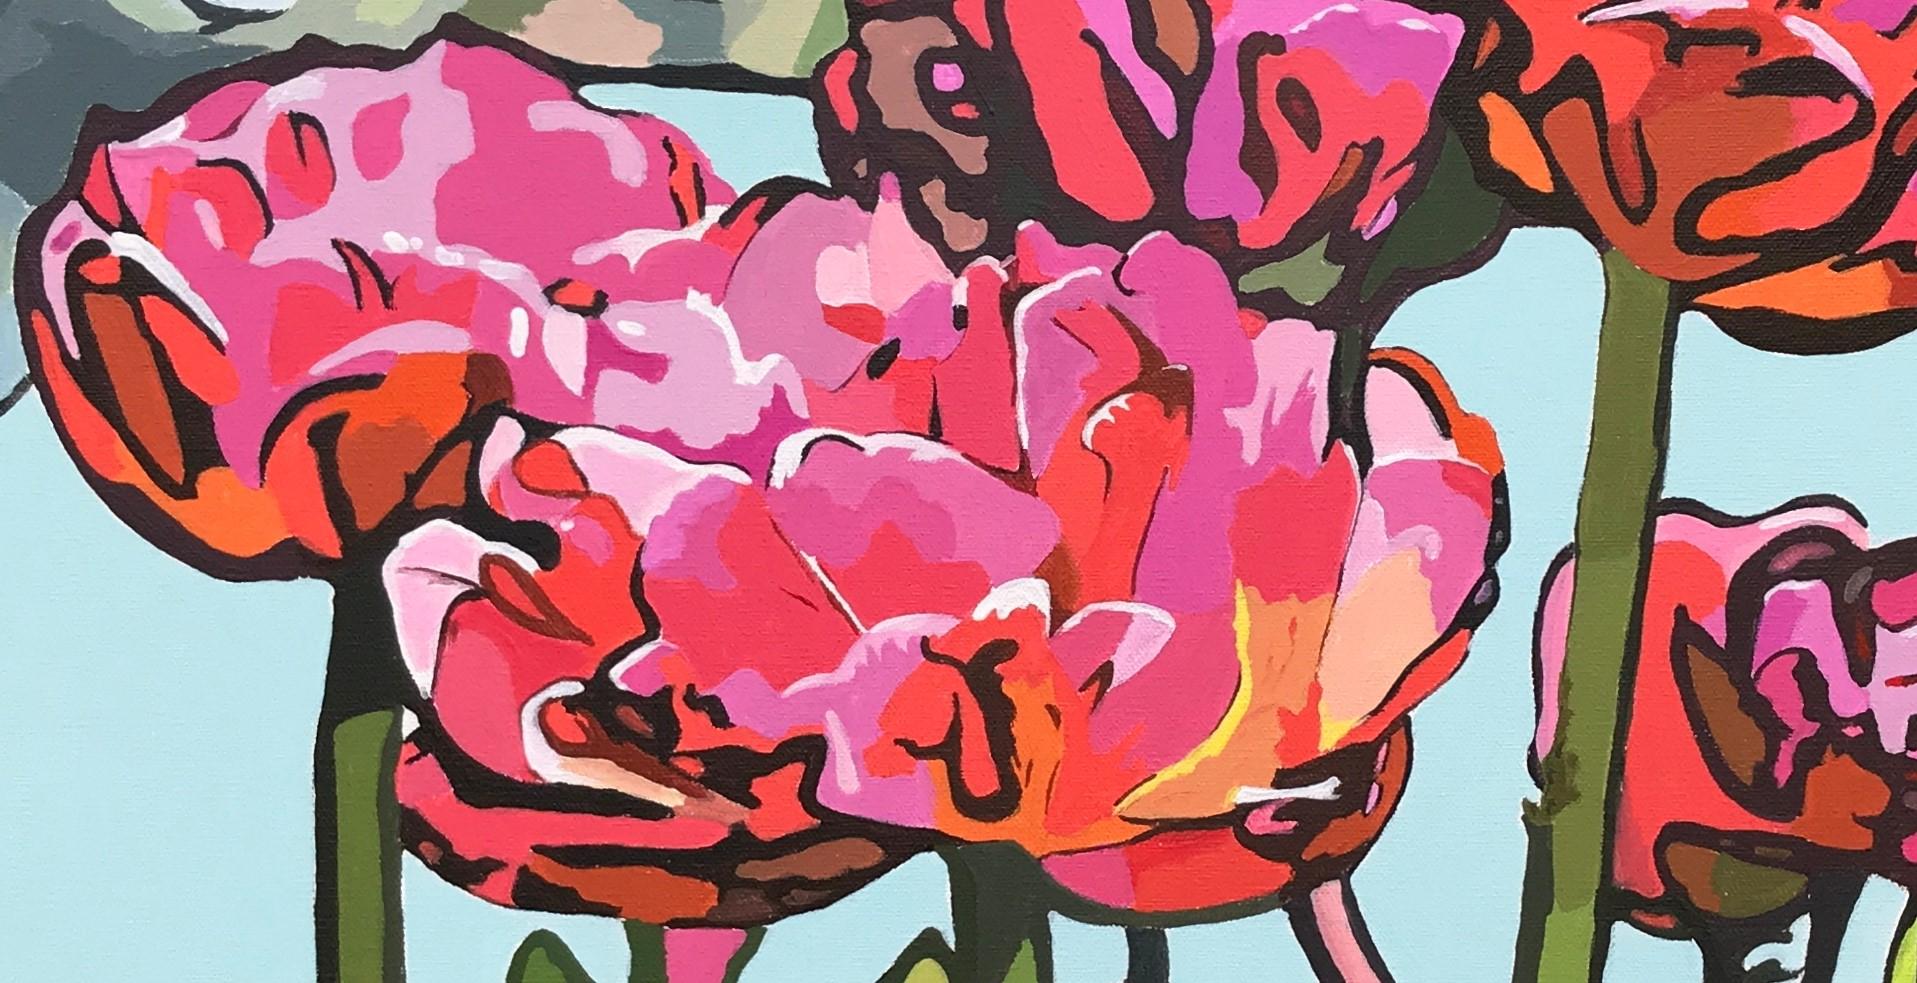 <p>Kommentare des Künstlers<br>Ein prächtiges Tulpenbeet steht in der bezaubernden Blumenszene des Künstlers John Jaster in voller Blüte. An den Enden der langen grünen Stängel blühen Knospen in tiefen Rot- und Rosatönen. Die Stauden stehen hoch und